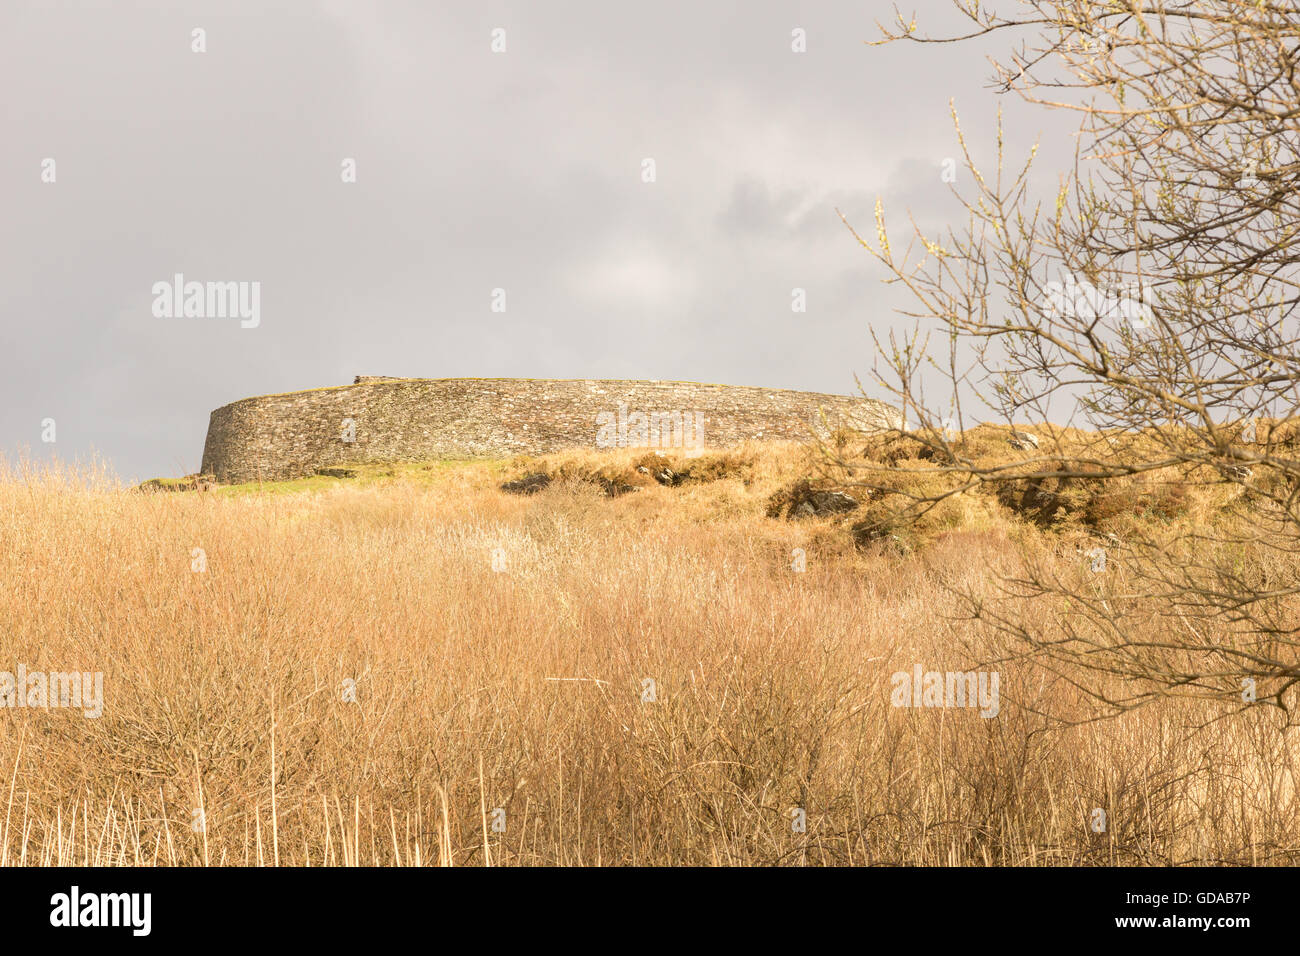 Irland, Kerry, County Kerry, Cahergall Stonefort ist eine restaurierte Eis-Ringfort, Ringfort unter einem grauen Himmel Stockfoto